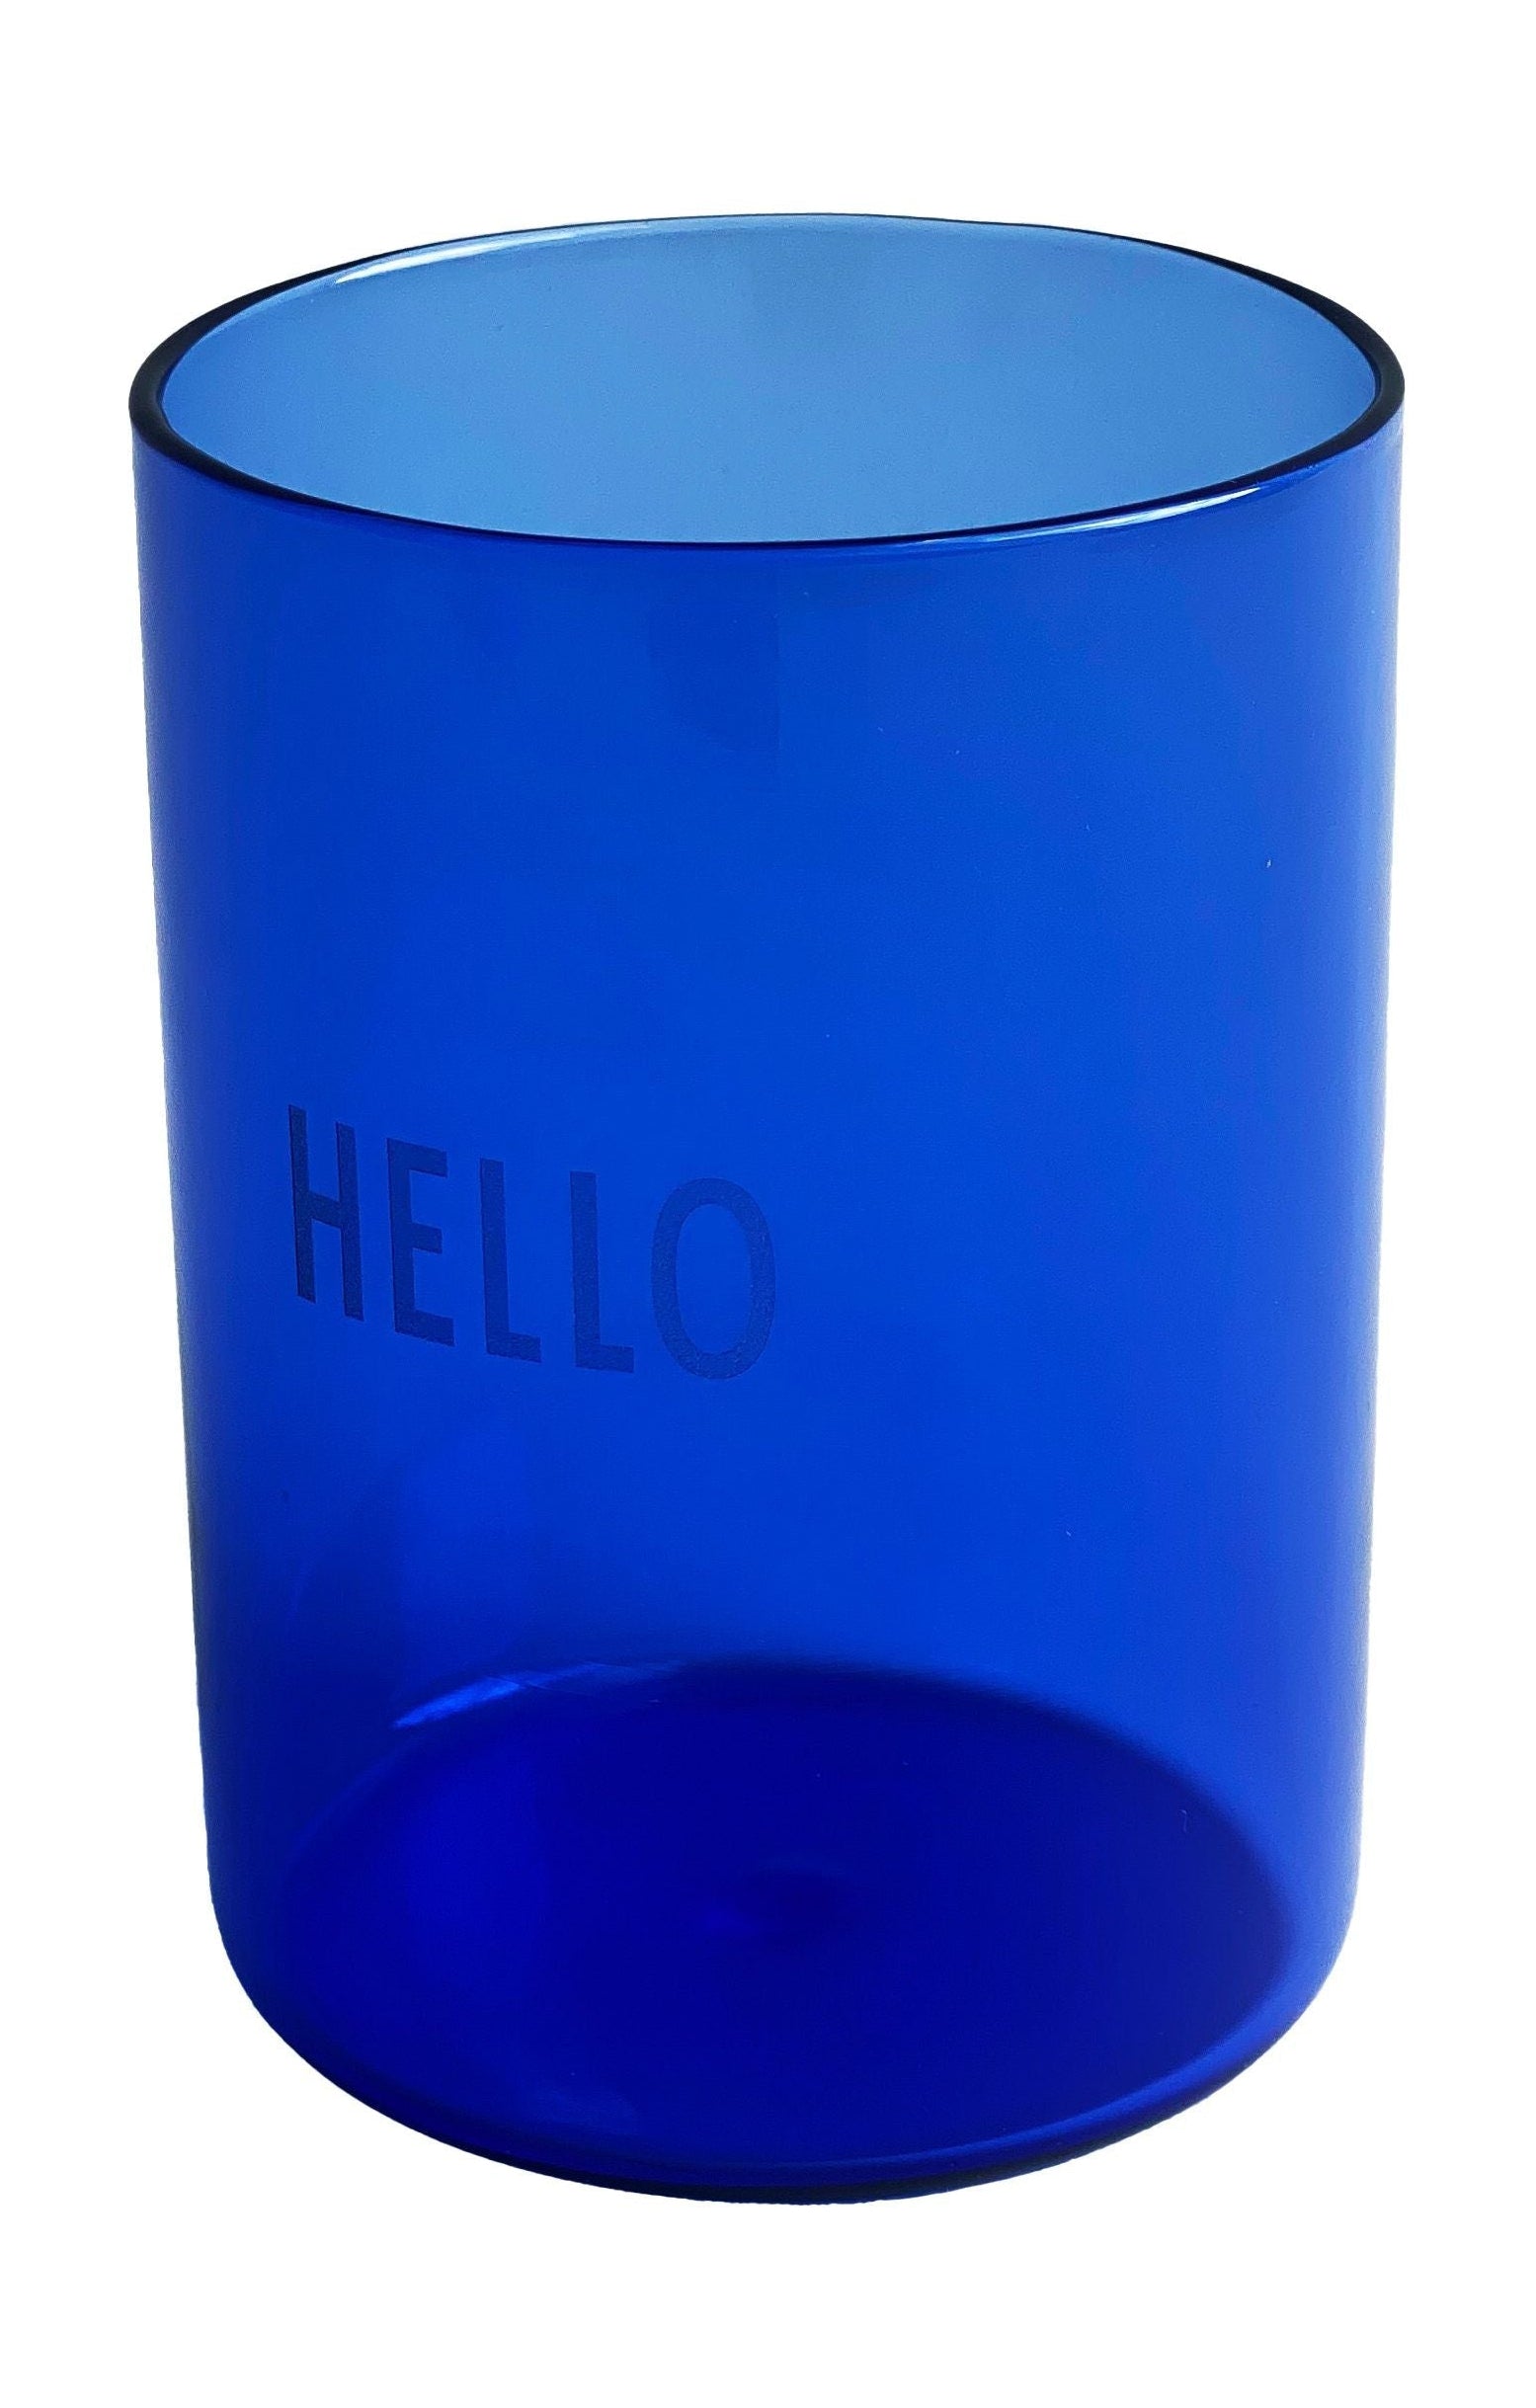 El vaso de bebida favorito de la carta de diseño hola, azul